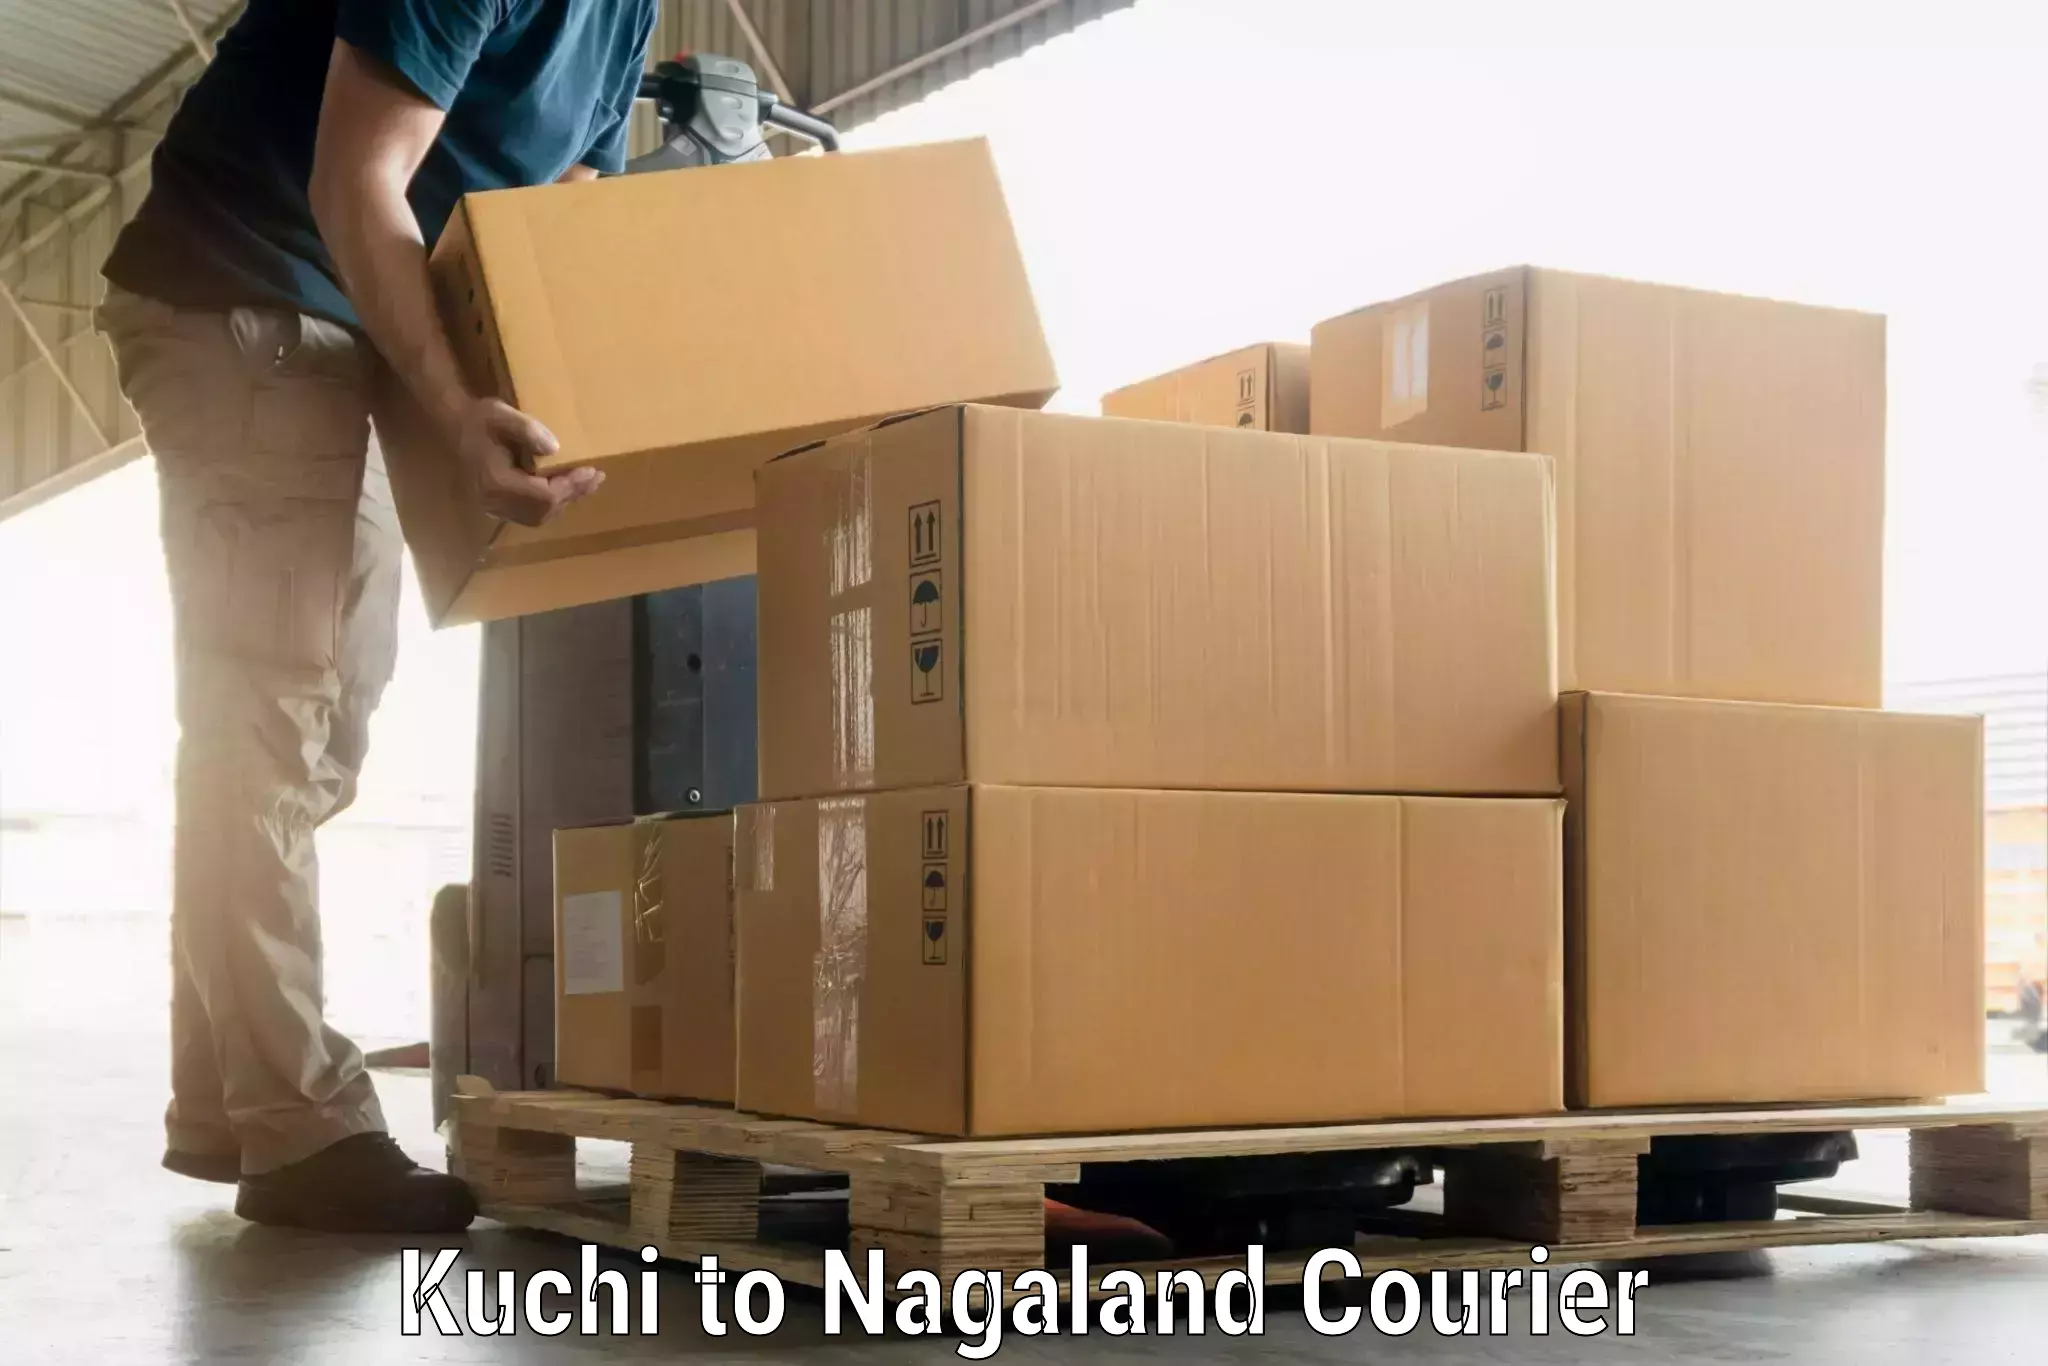 Luggage transport service Kuchi to Longleng